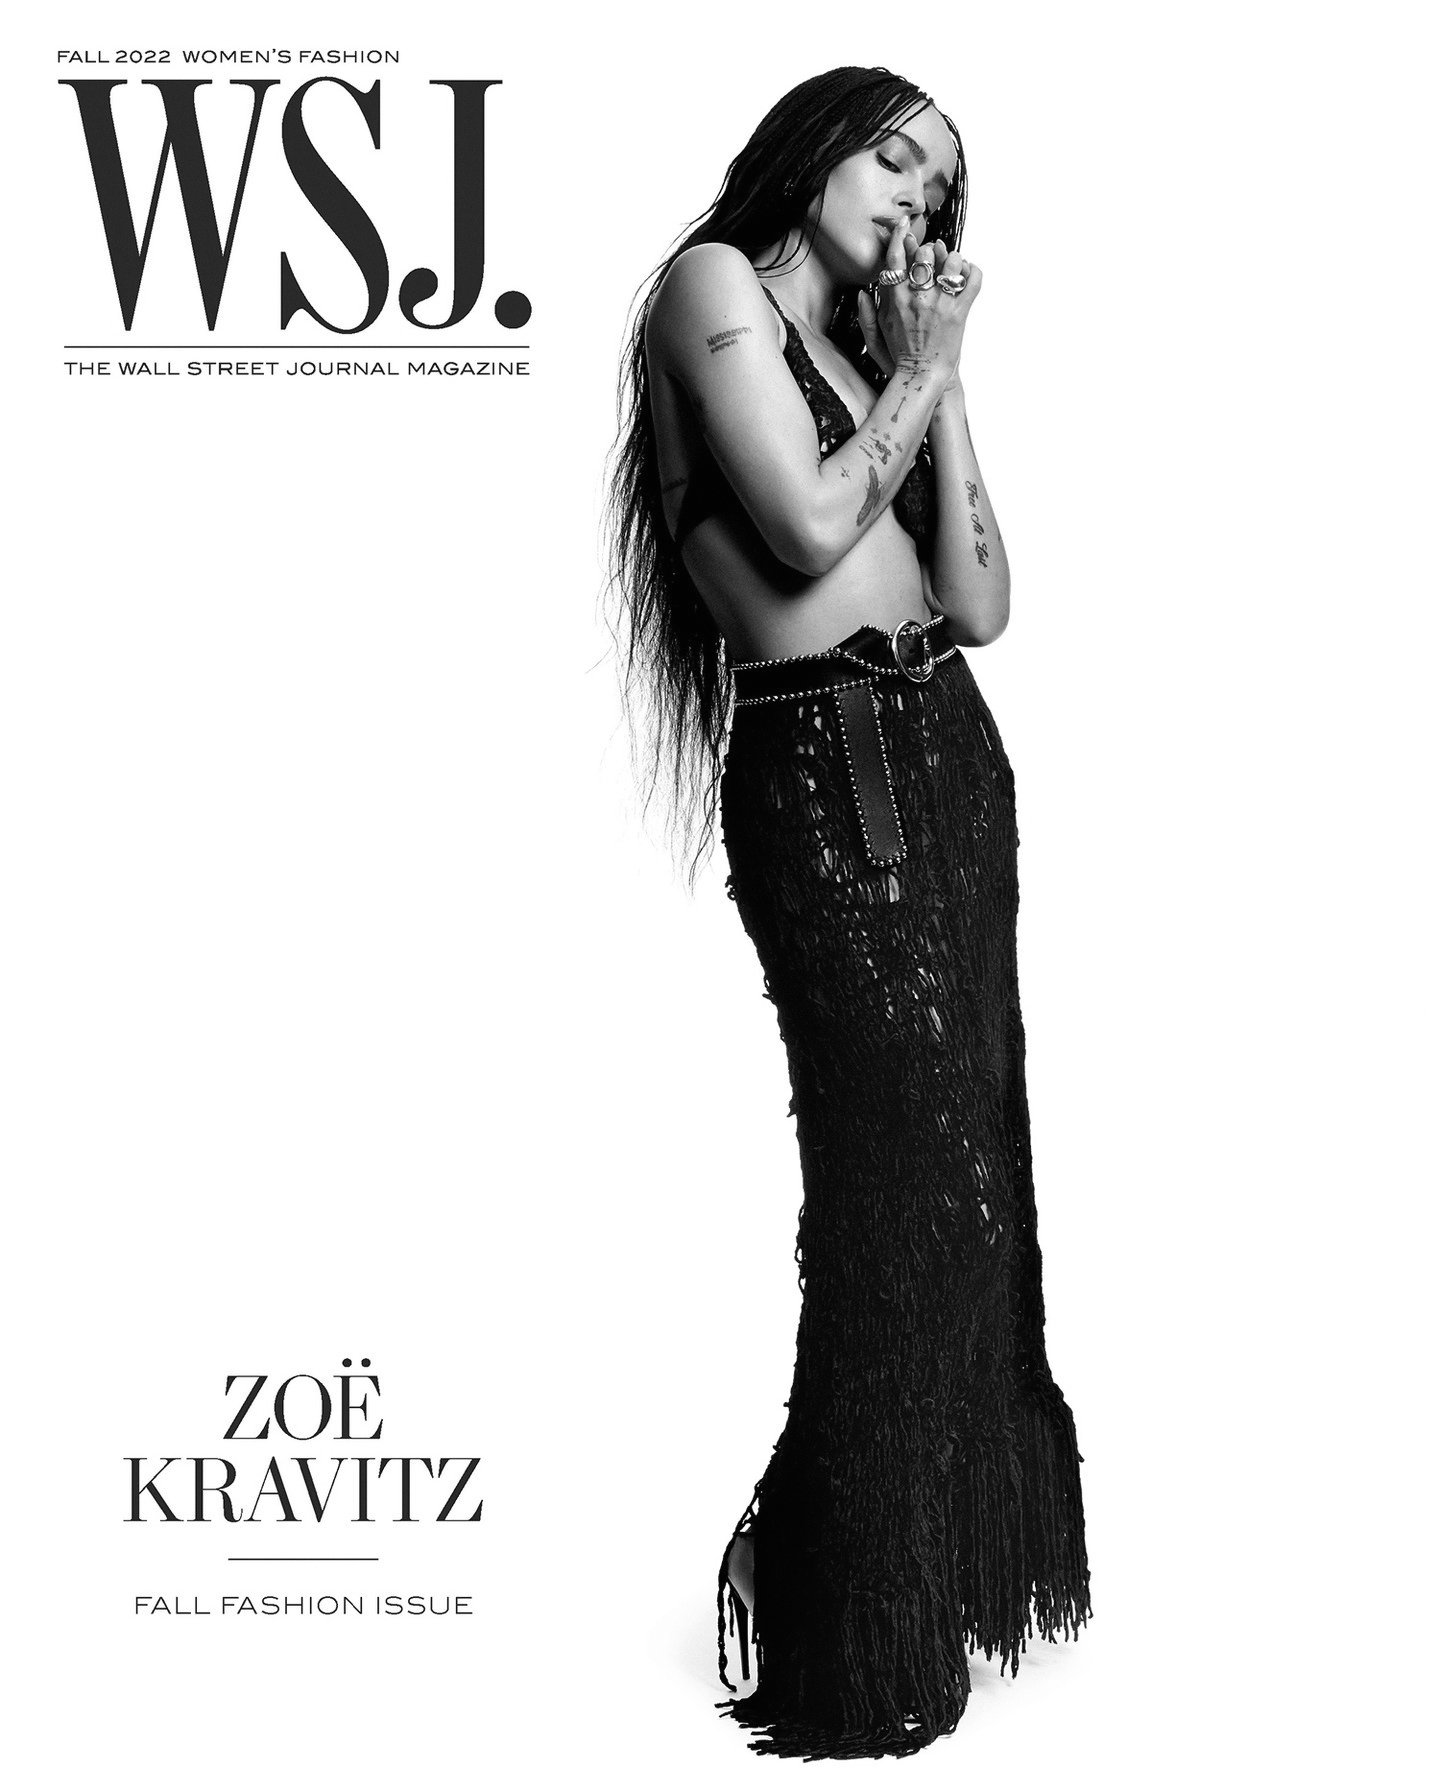 Zoe-Kravitz-by-Campbell-Addy-WSJ-Magazine-Fall-2022 (9).jpg